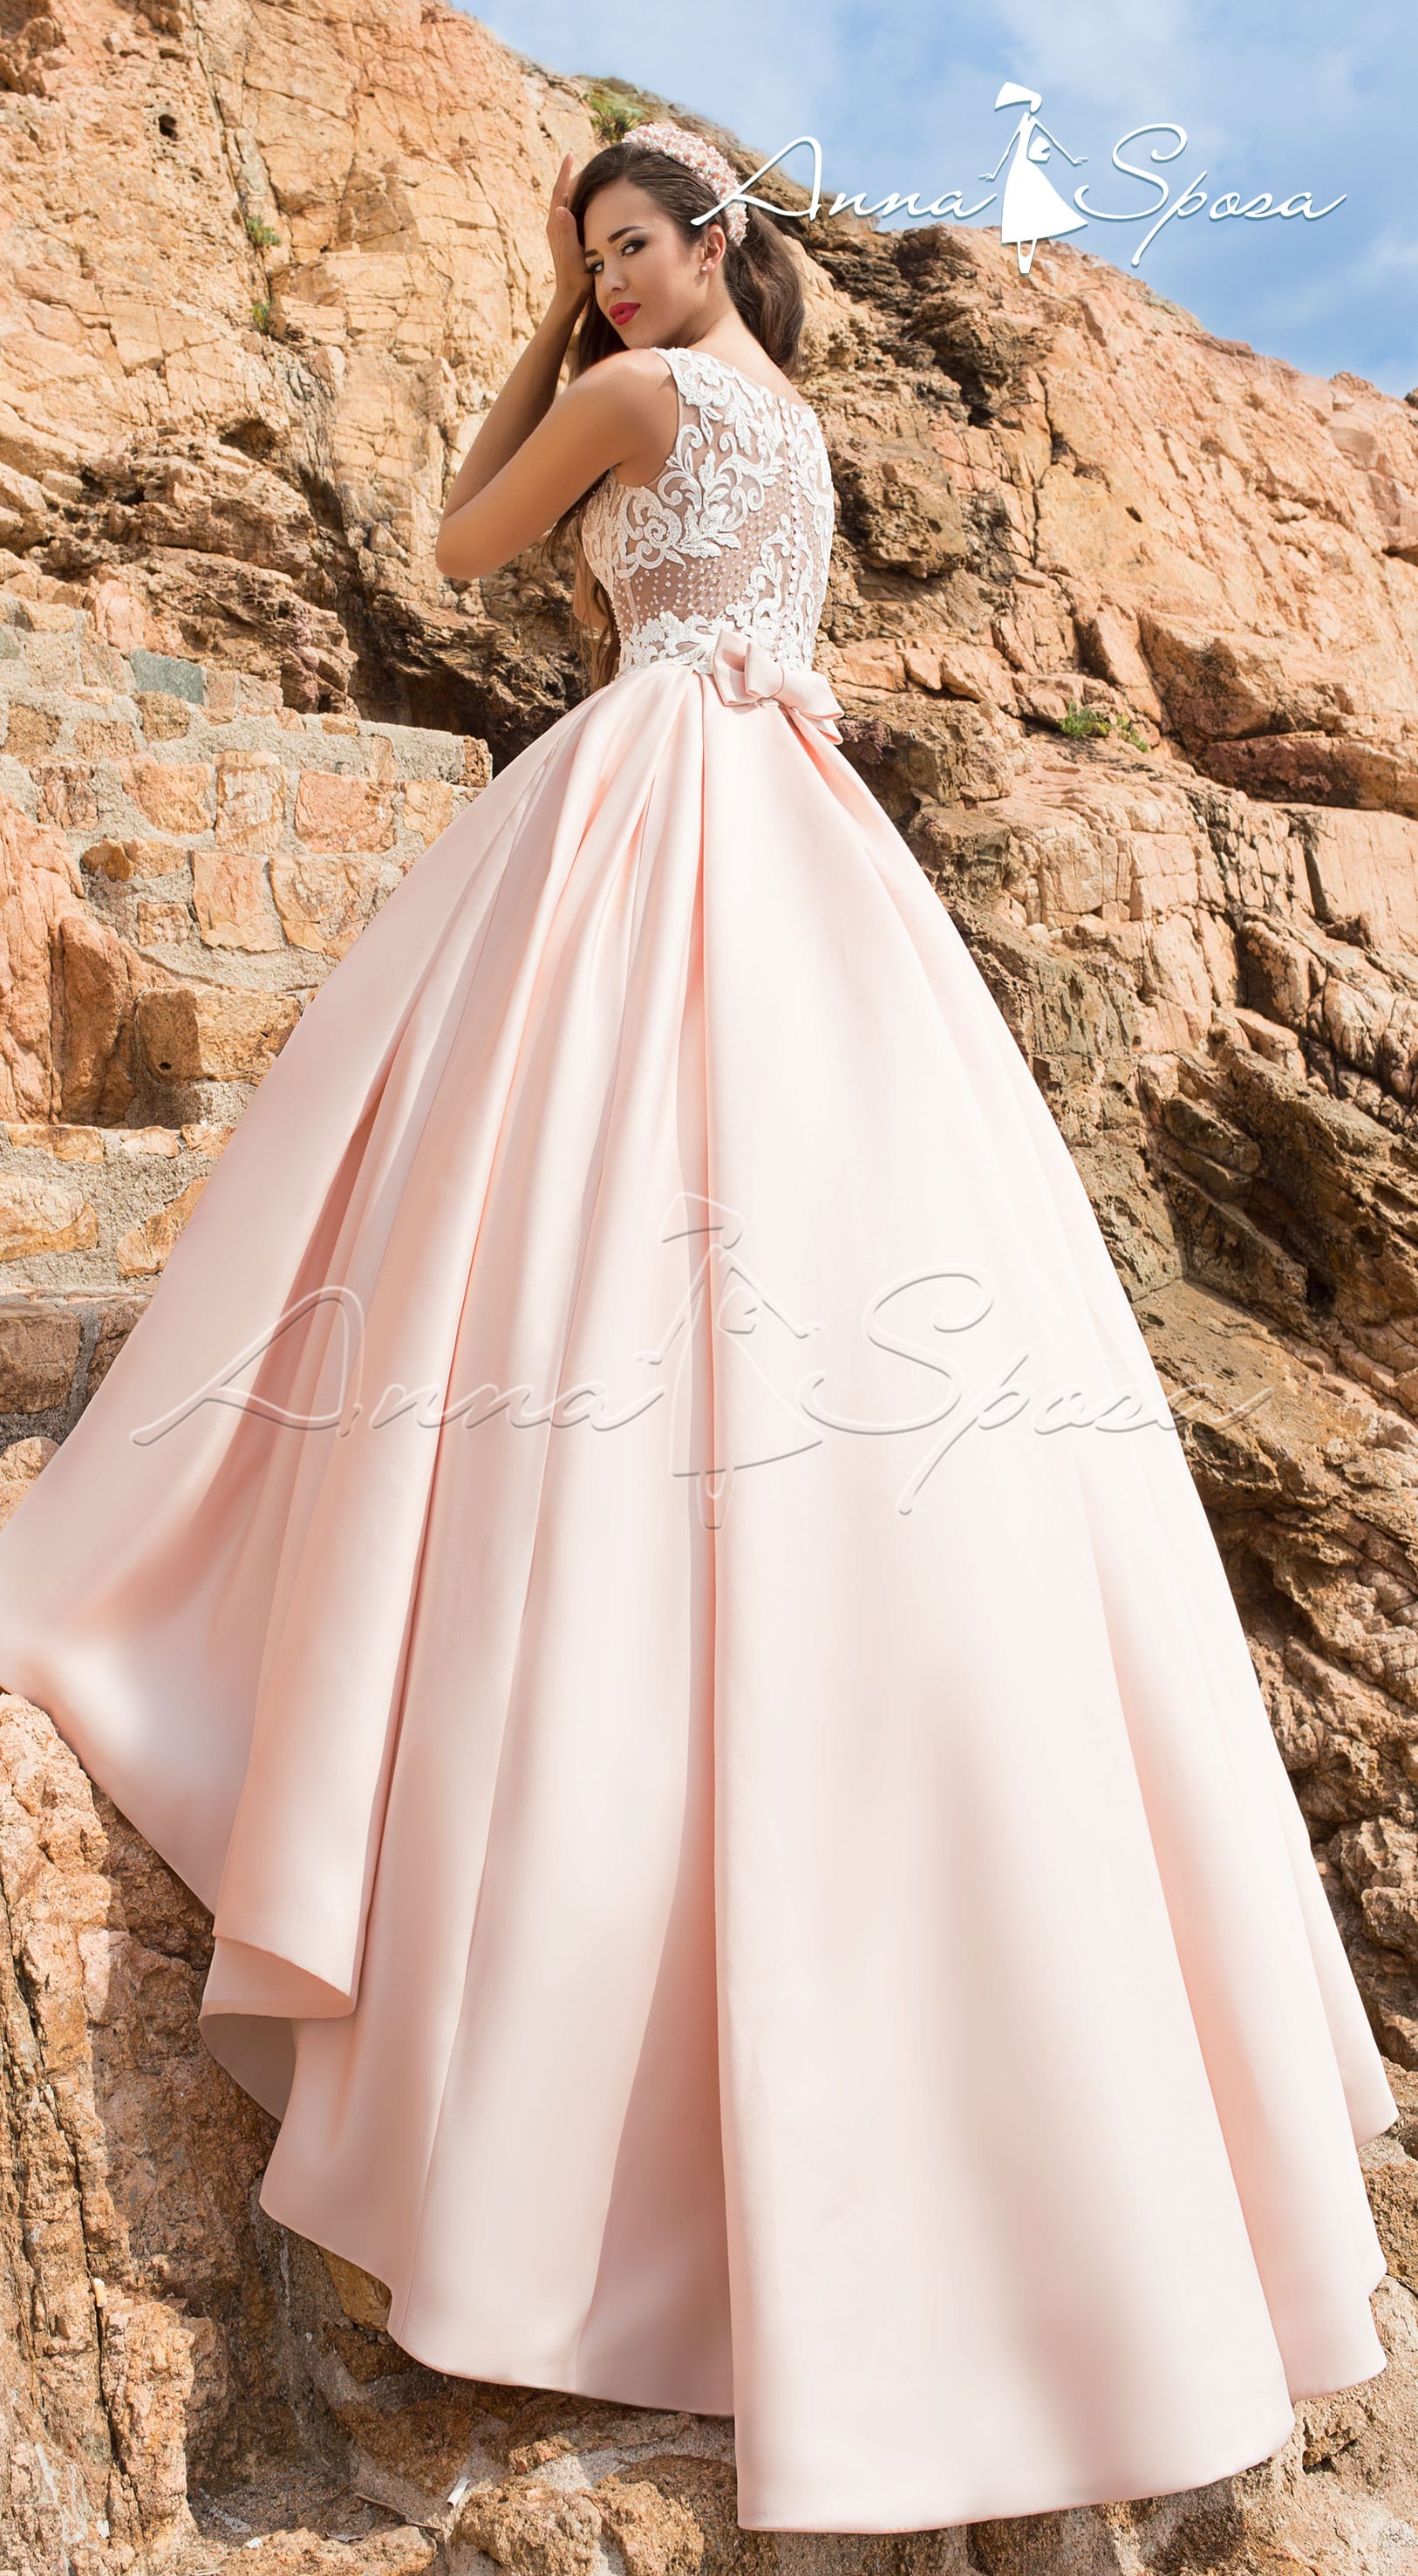 Свадебное платье с прозрачным корсетом